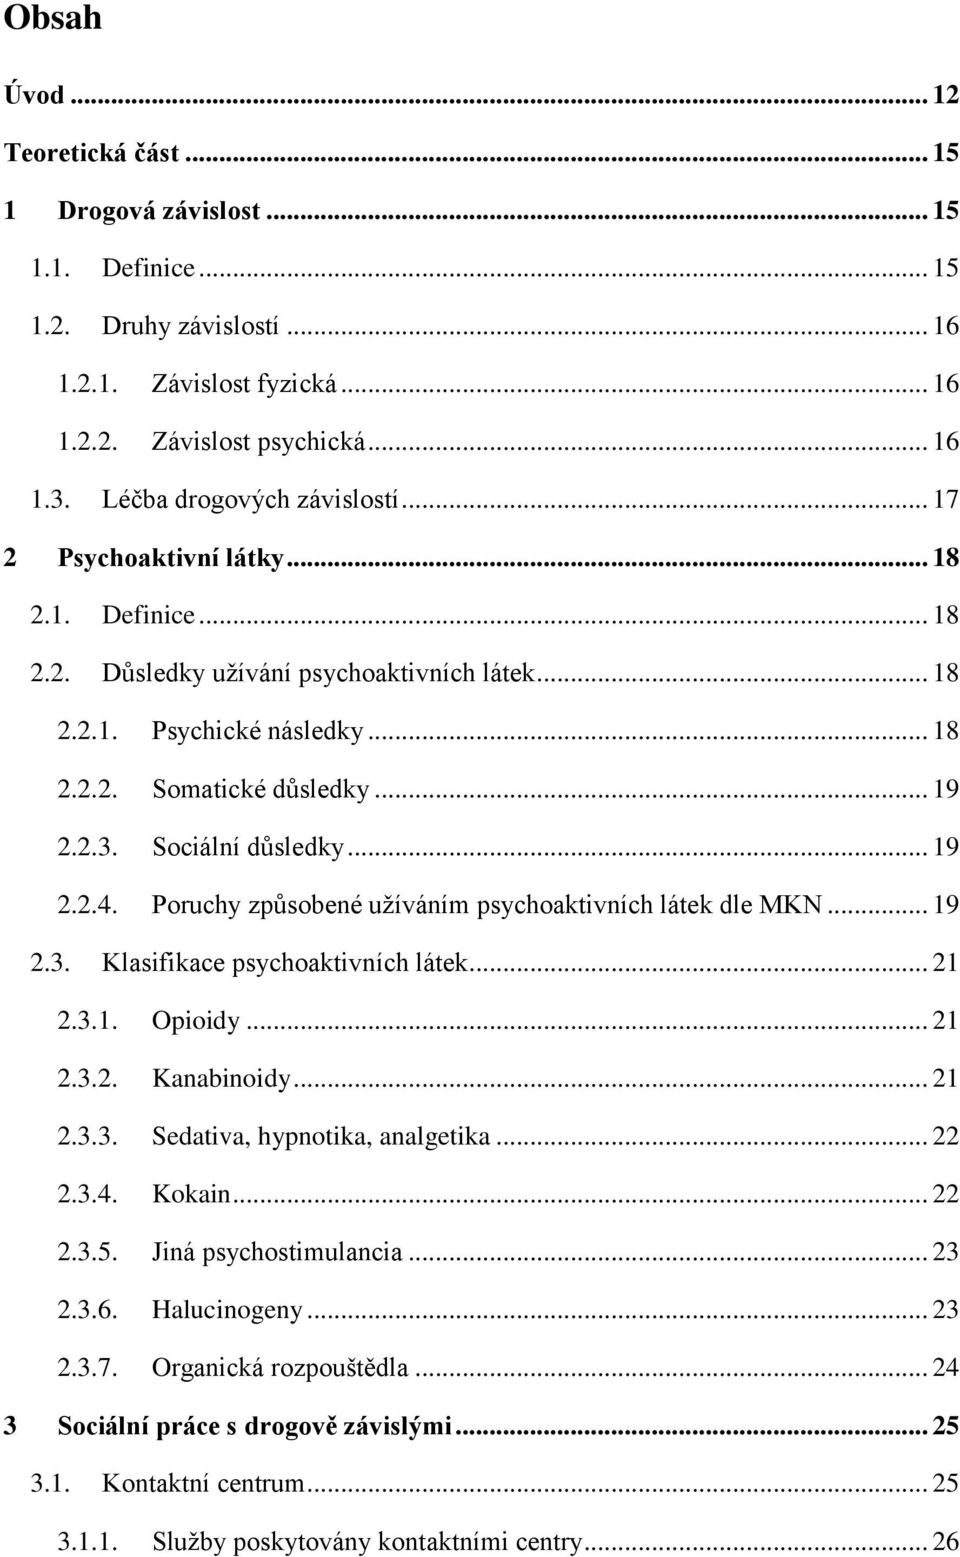 Sociální důsledky... 19 2.2.4. Poruchy způsobené užíváním psychoaktivních látek dle MKN... 19 2.3. Klasifikace psychoaktivních látek... 21 2.3.1. Opioidy... 21 2.3.2. Kanabinoidy... 21 2.3.3. Sedativa, hypnotika, analgetika.